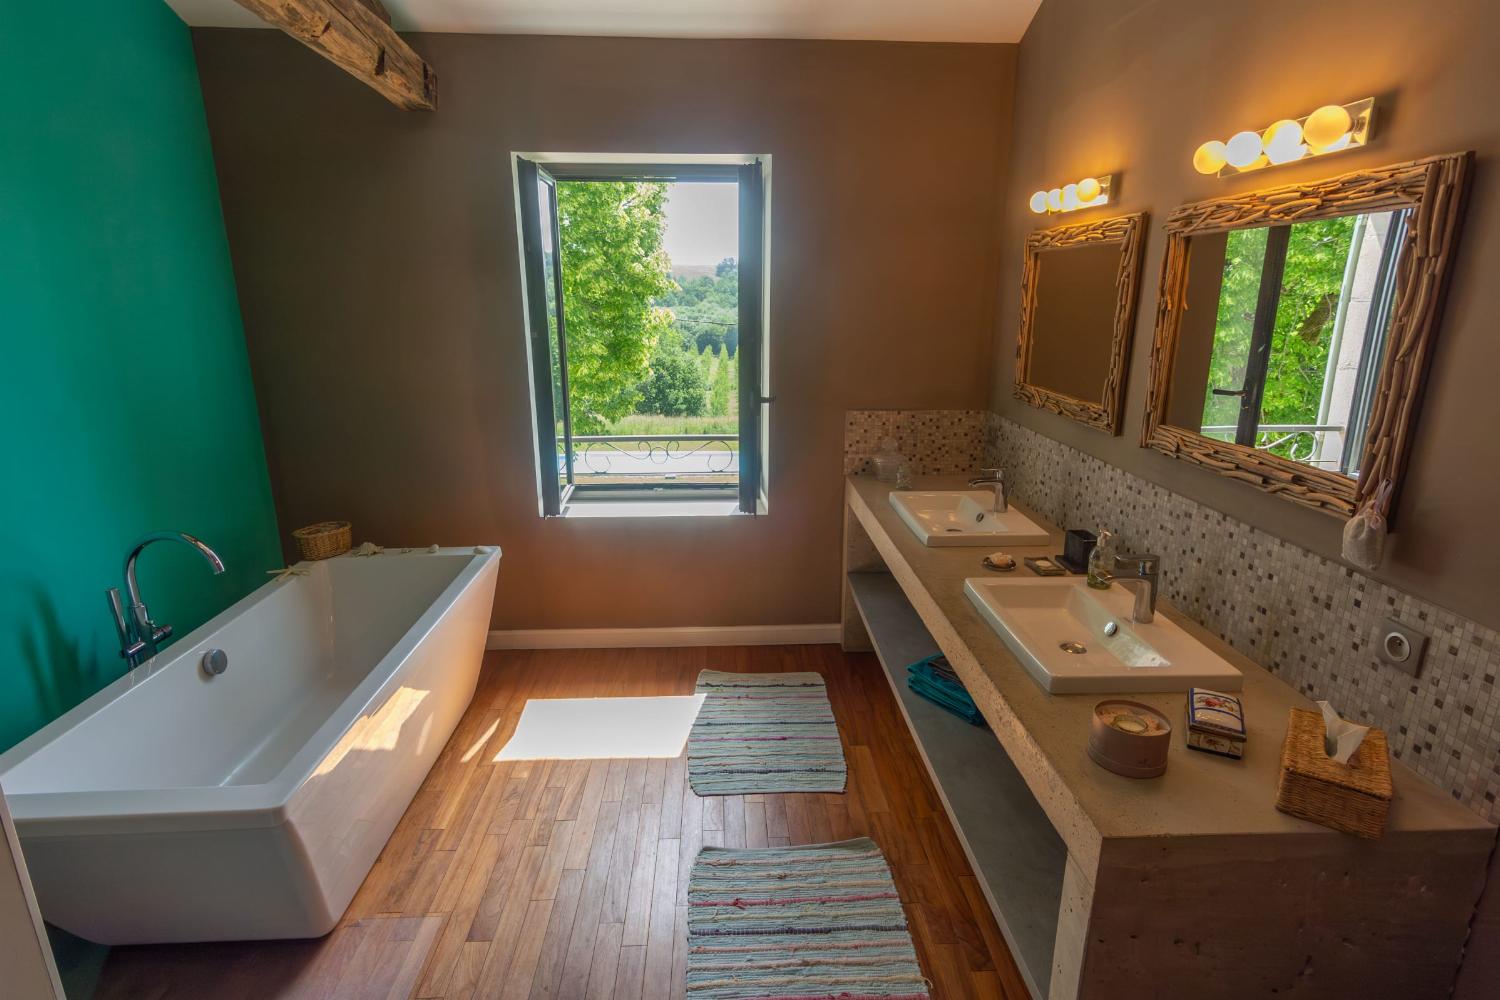 Salle de bain | Maison de vacances dans le sud-ouest de la France